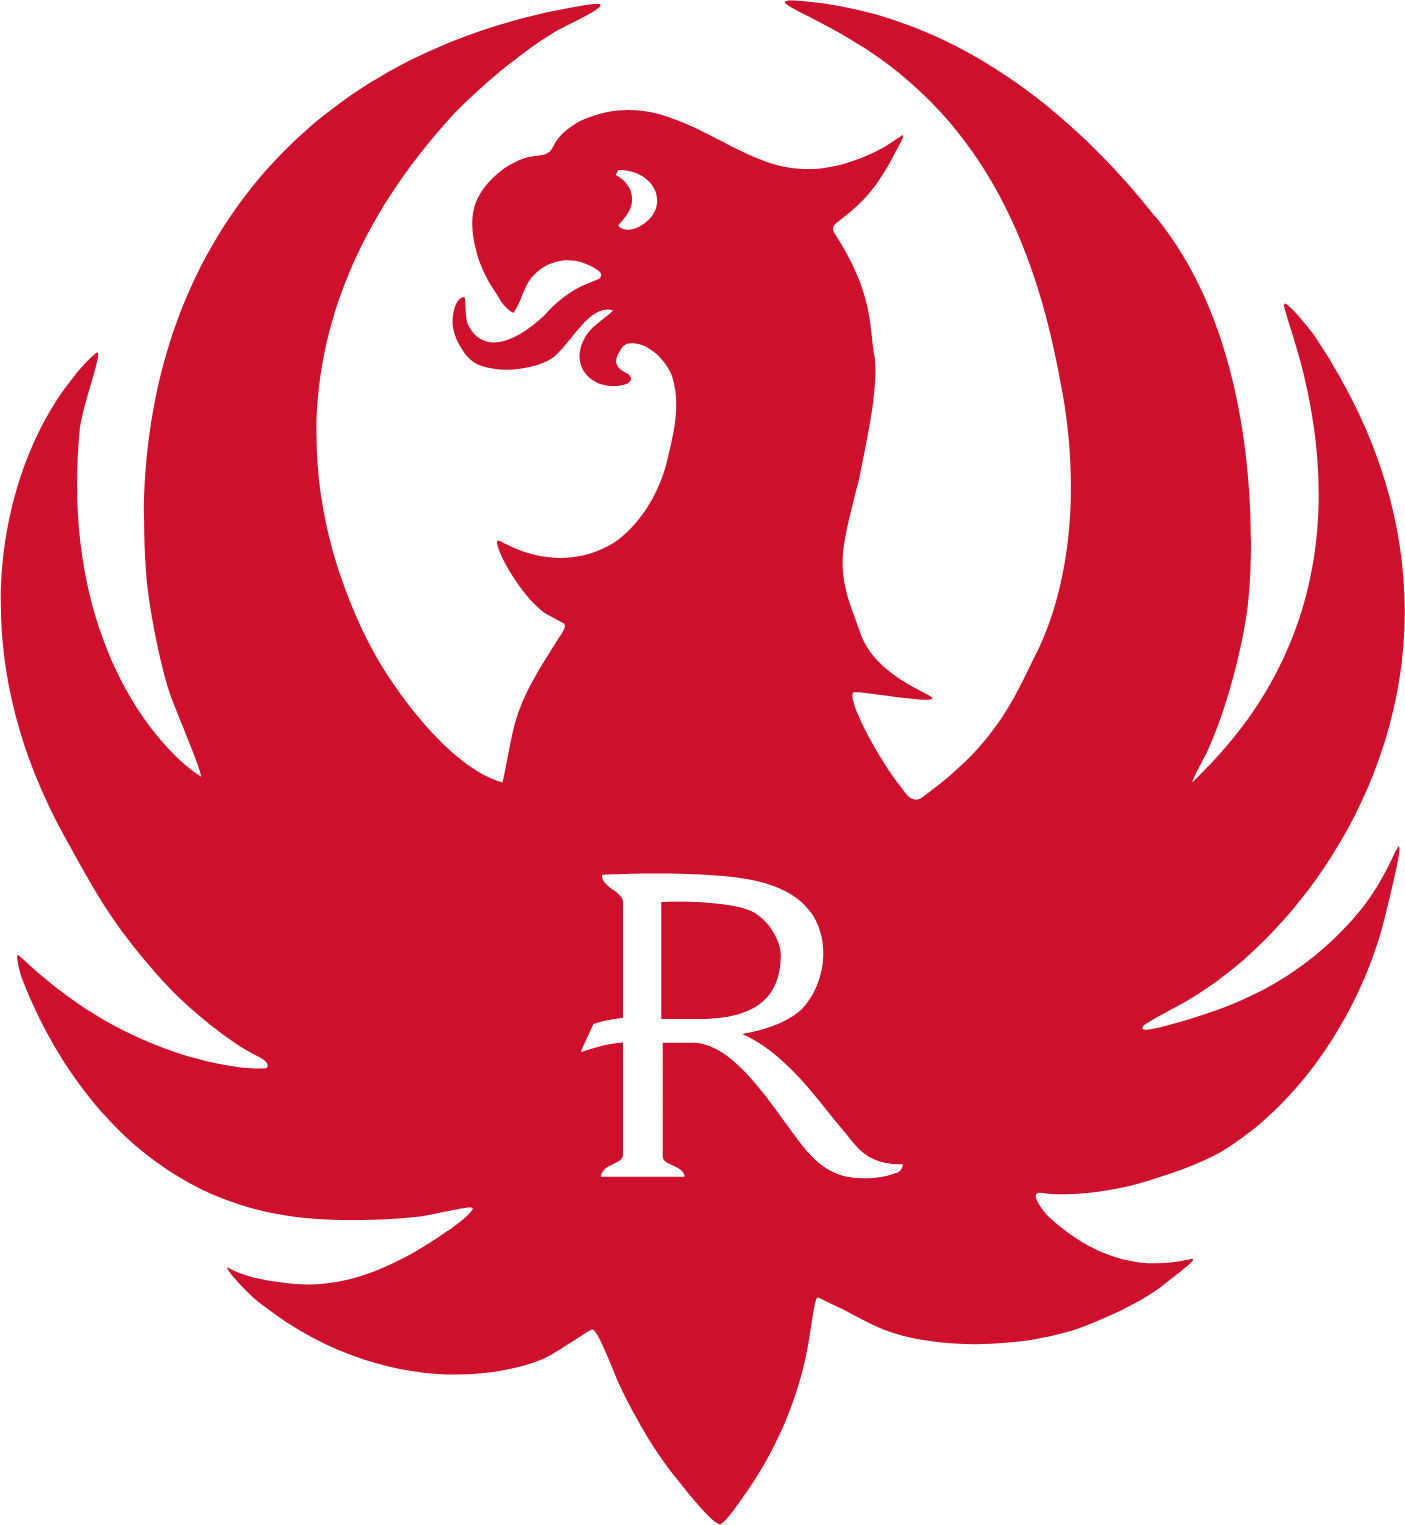 Sturm, Ruger & Co logo (PNG transparent)